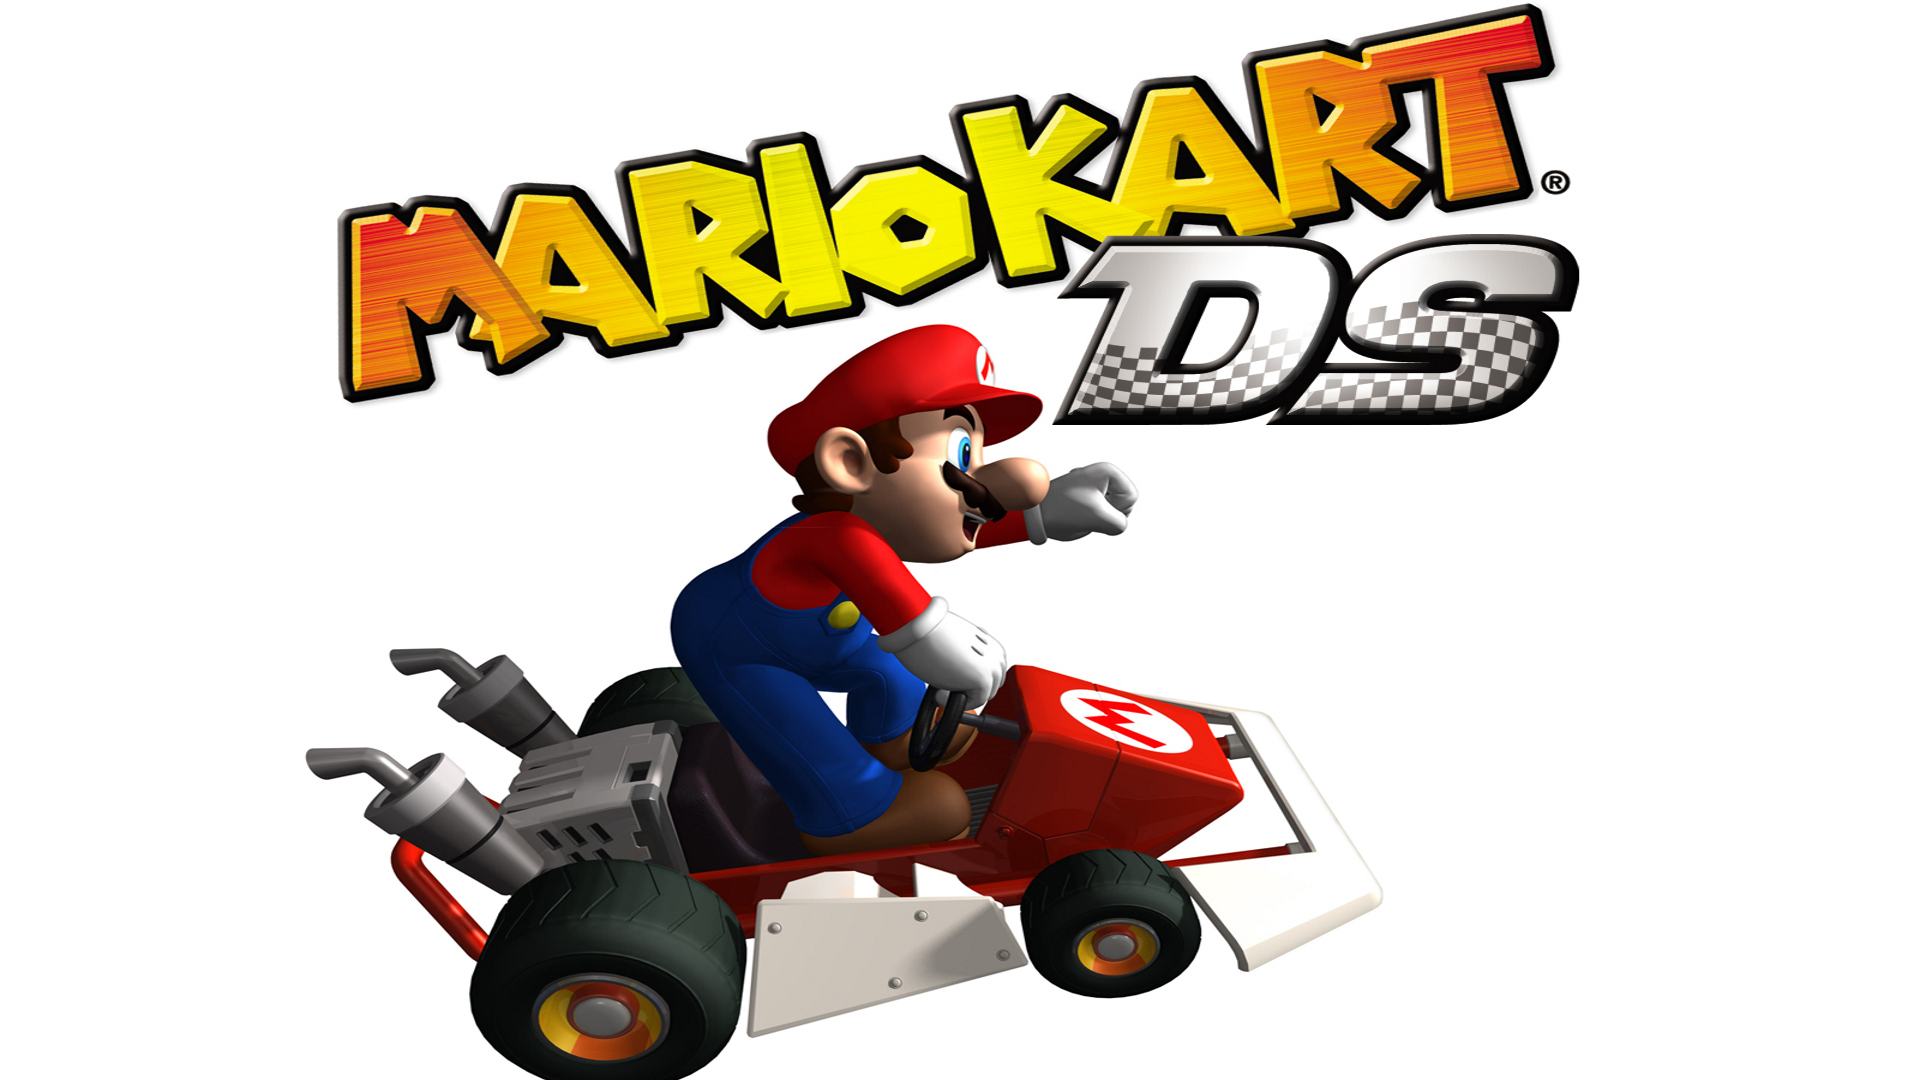 Descargar fondos de escritorio de Mario Kart Ds HD